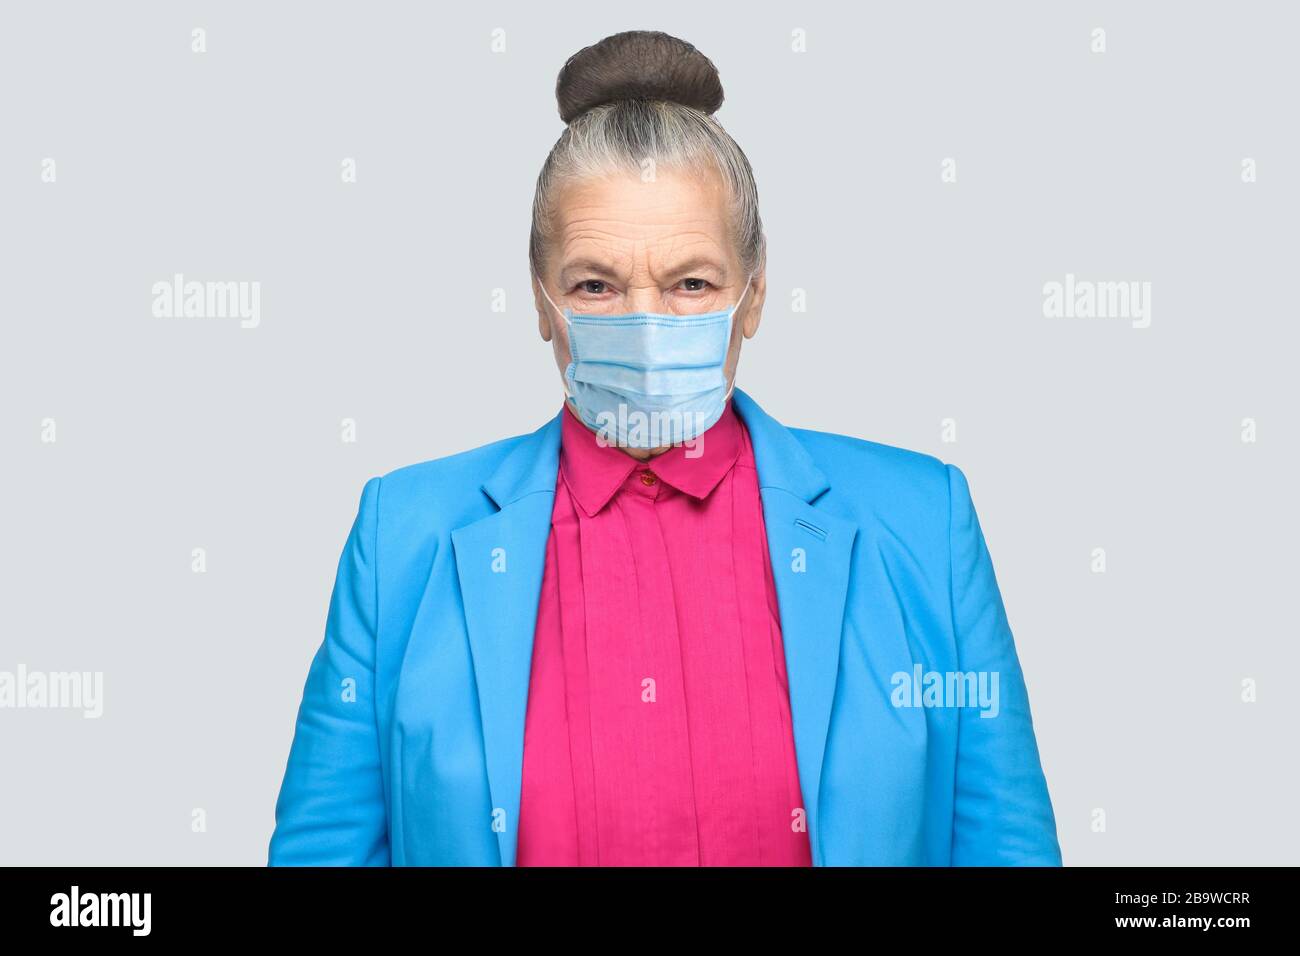 Protezione contro le malattie contagiose, coronavirus. Donna anziana con maschera igienica per prevenire le infezioni, malattie respiratorie trasportate dall'aria come l'influenza, Covi Foto Stock